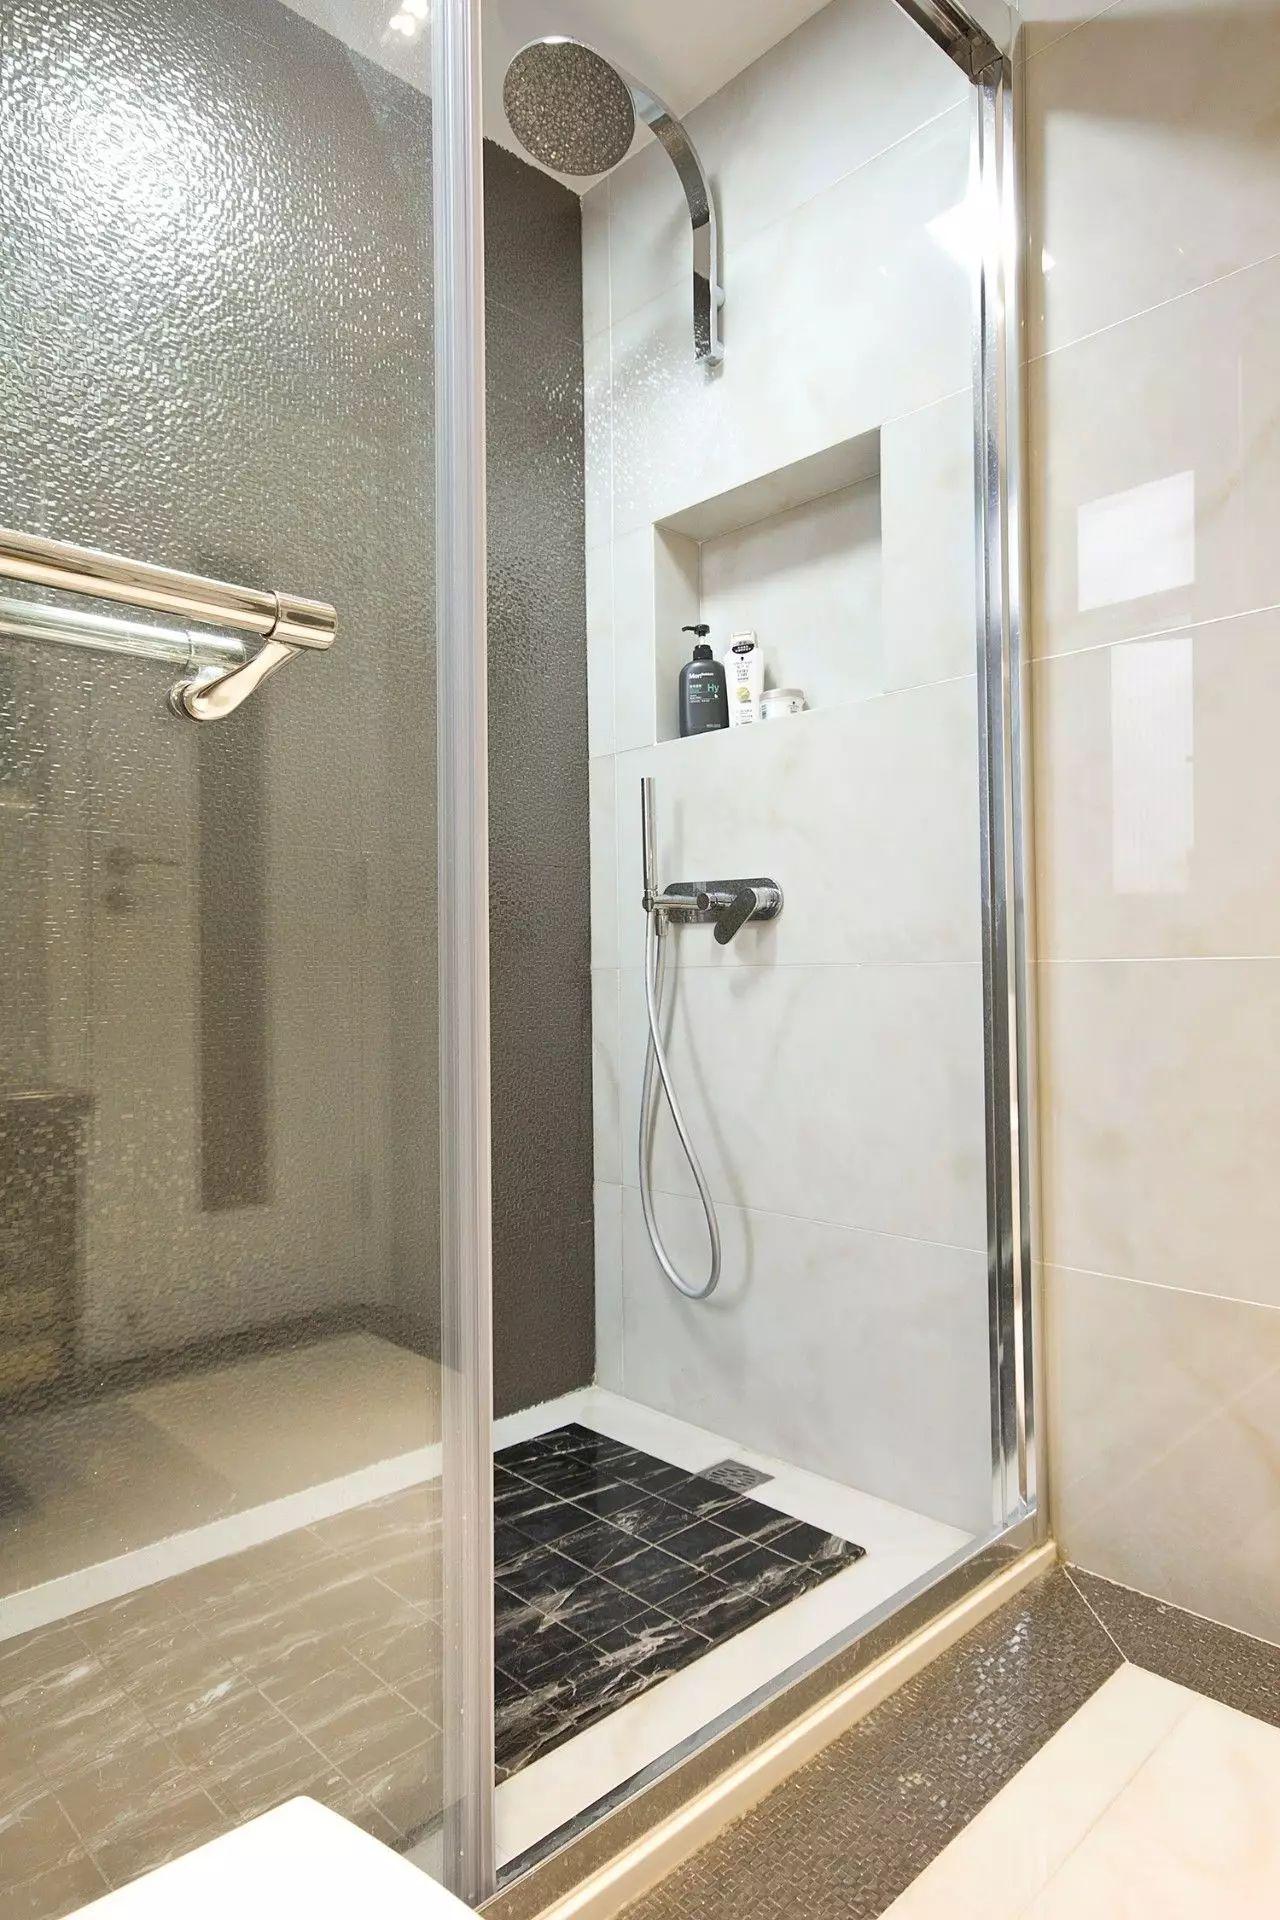 Phòng tắm quá nhỏ, làm sao để bạn có thể tách biệt khu khô và ướt? 4 thiết kế dưới đây sẽ giúp bạn- Ảnh 3.